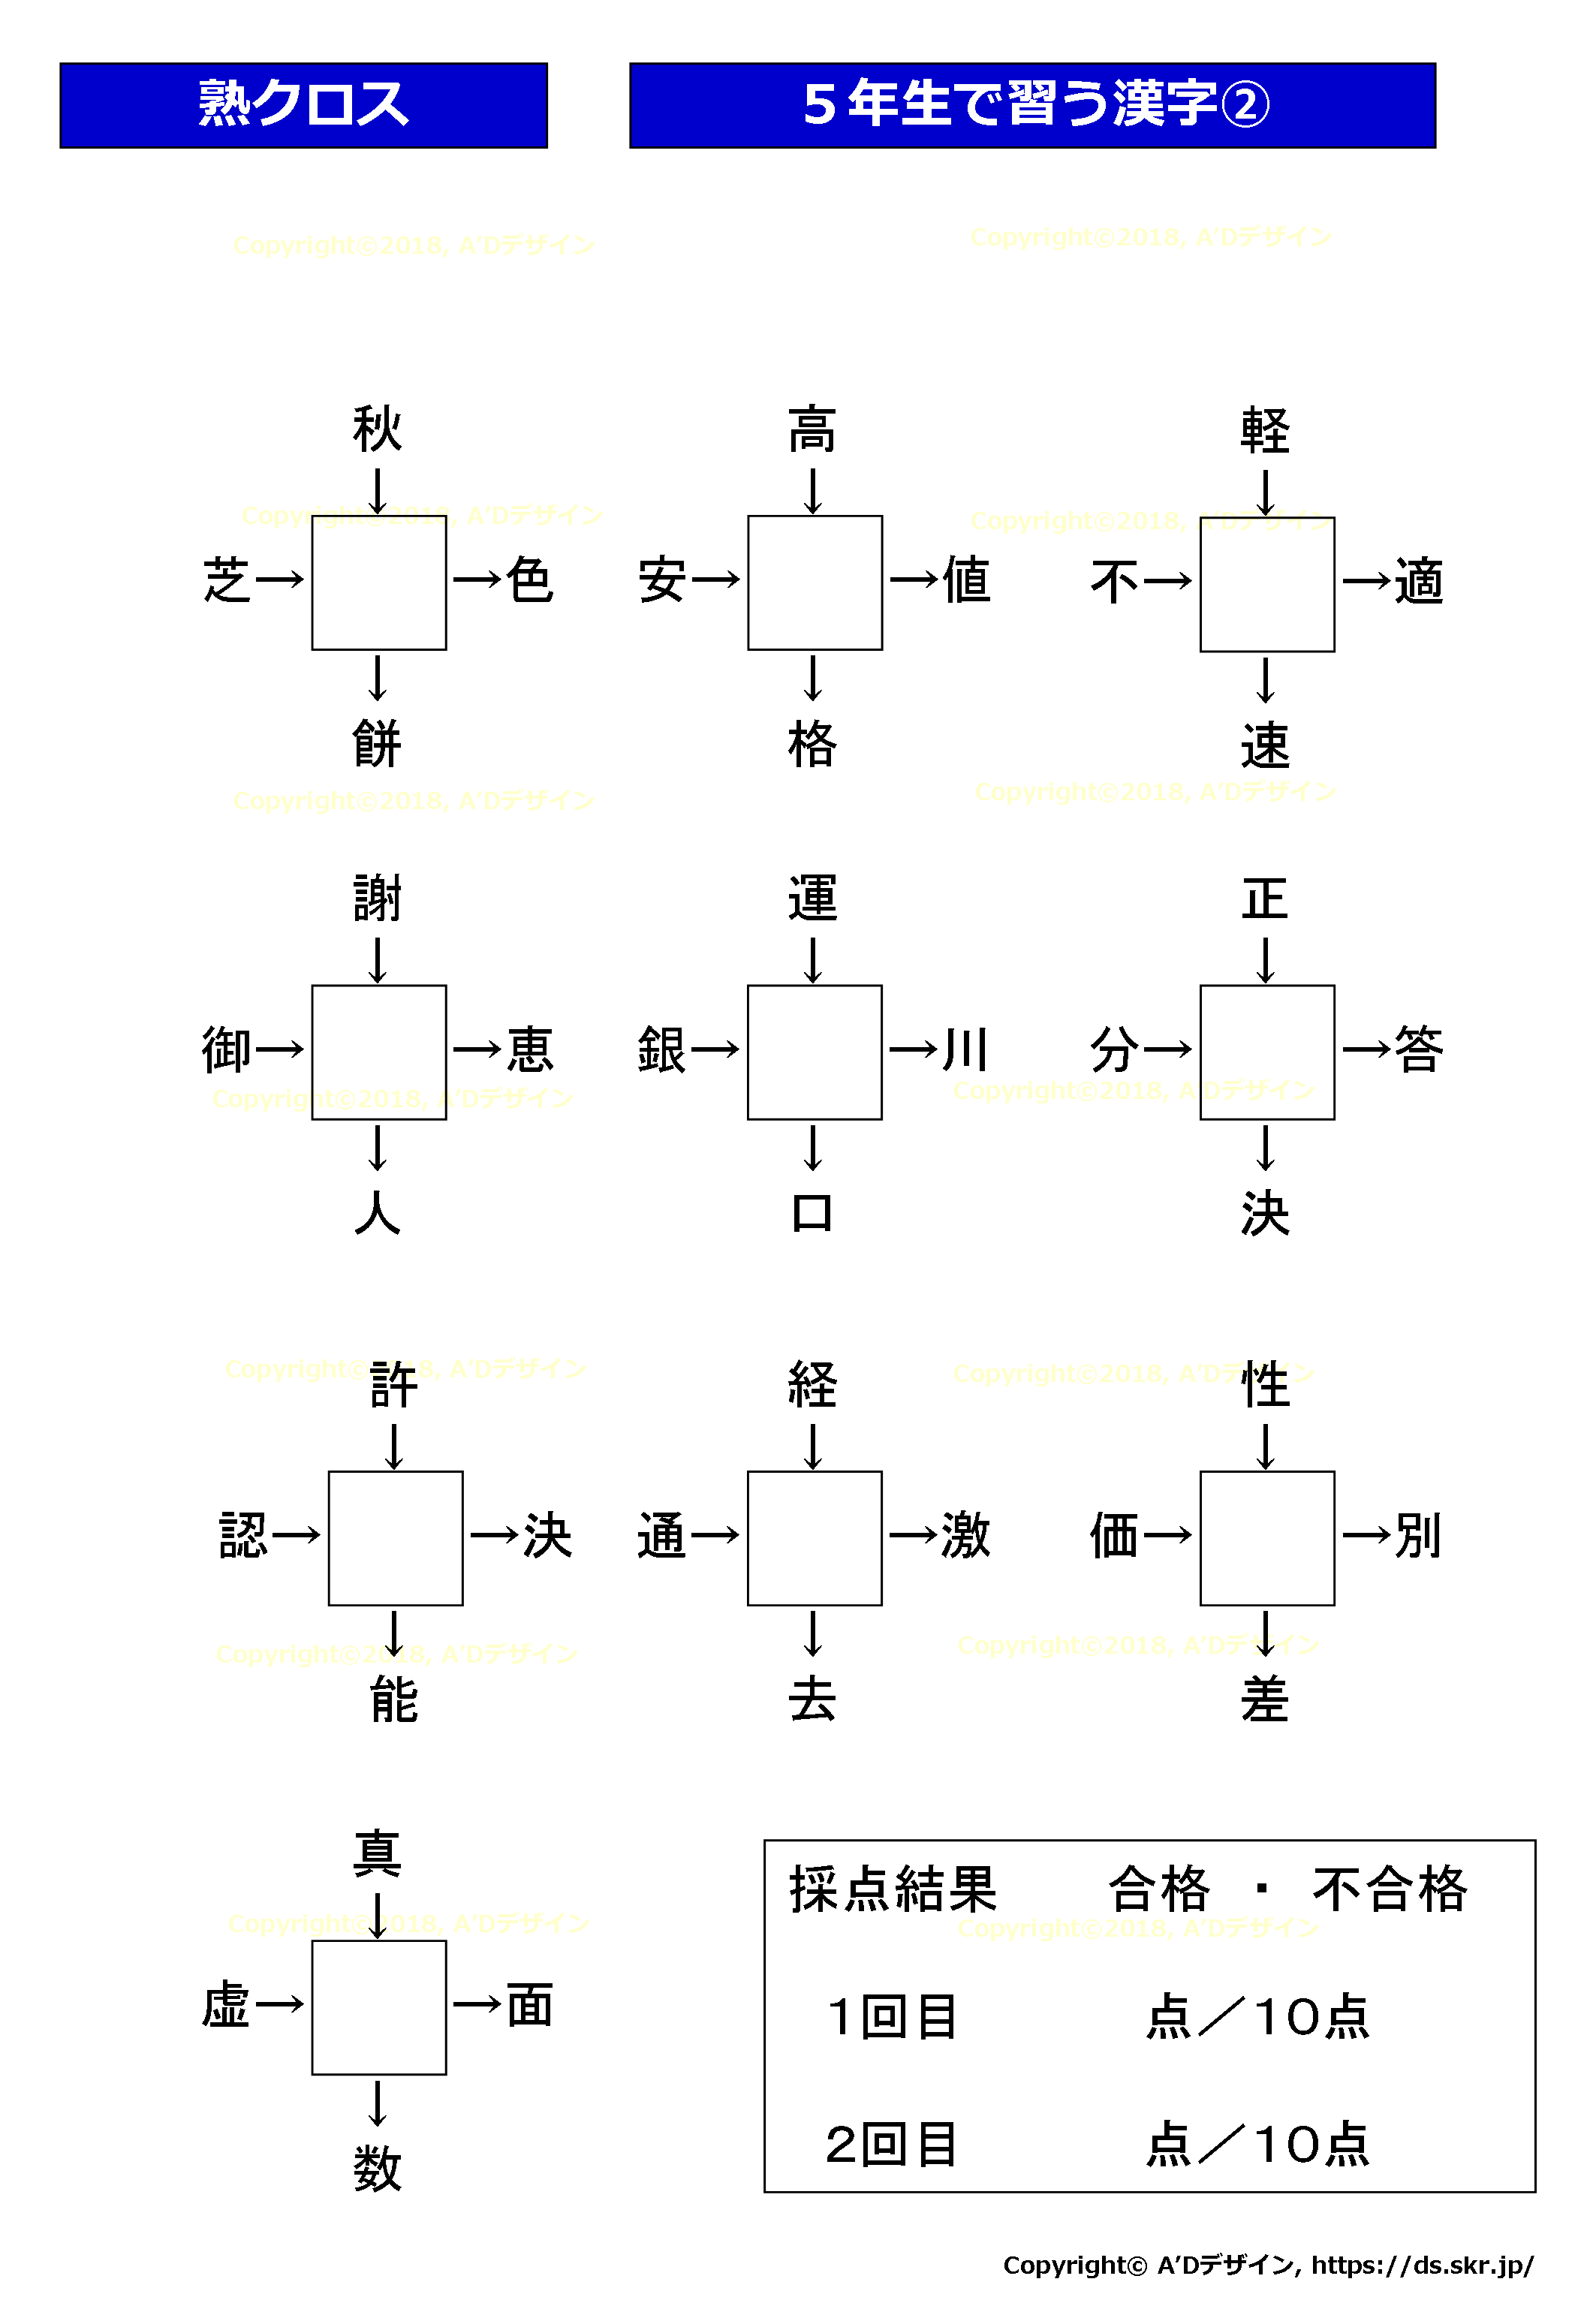 熟語クロスワード 漢字を当てはめるクロスワード10問クイズです